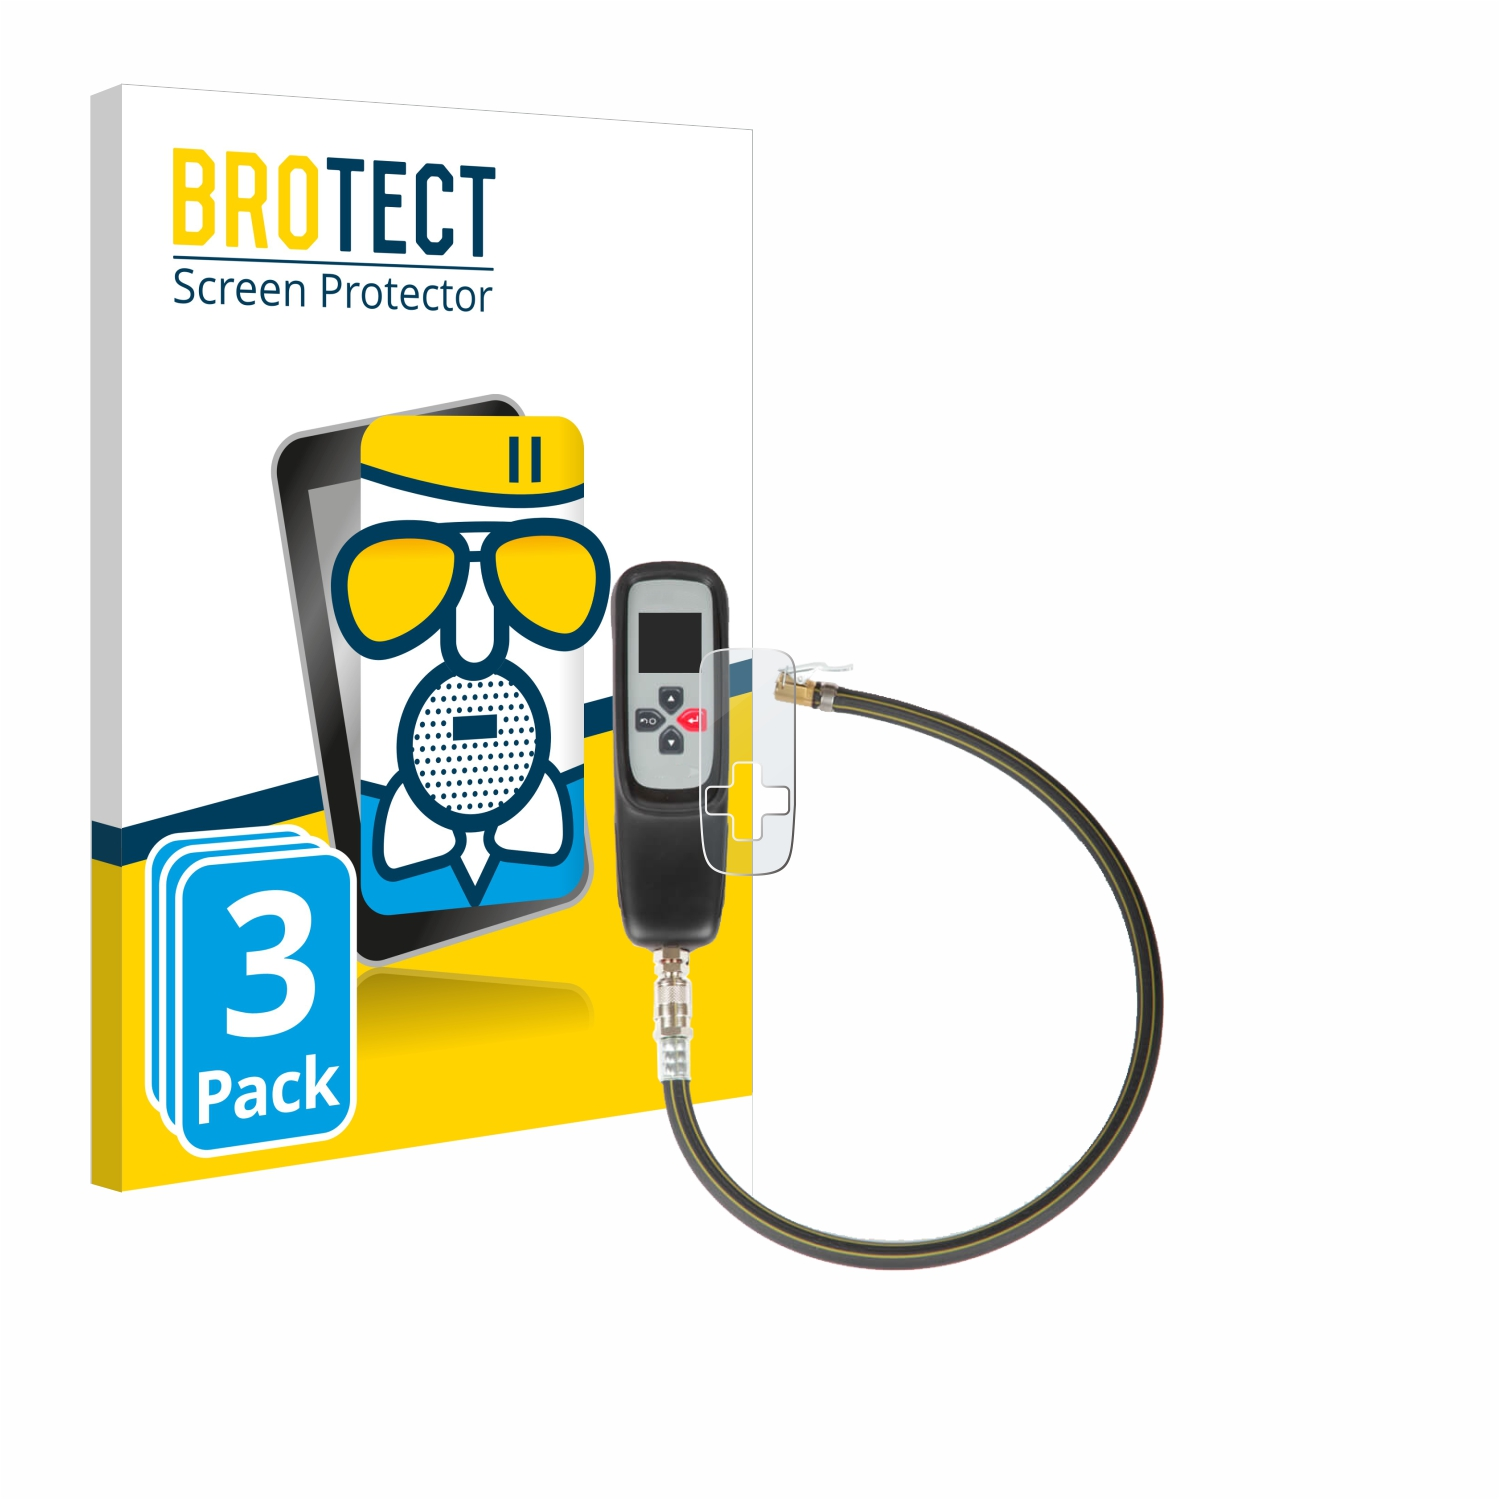 BROTECT 3x Airglass matte Schutzfolie(für Bartec /200) 100 TAP